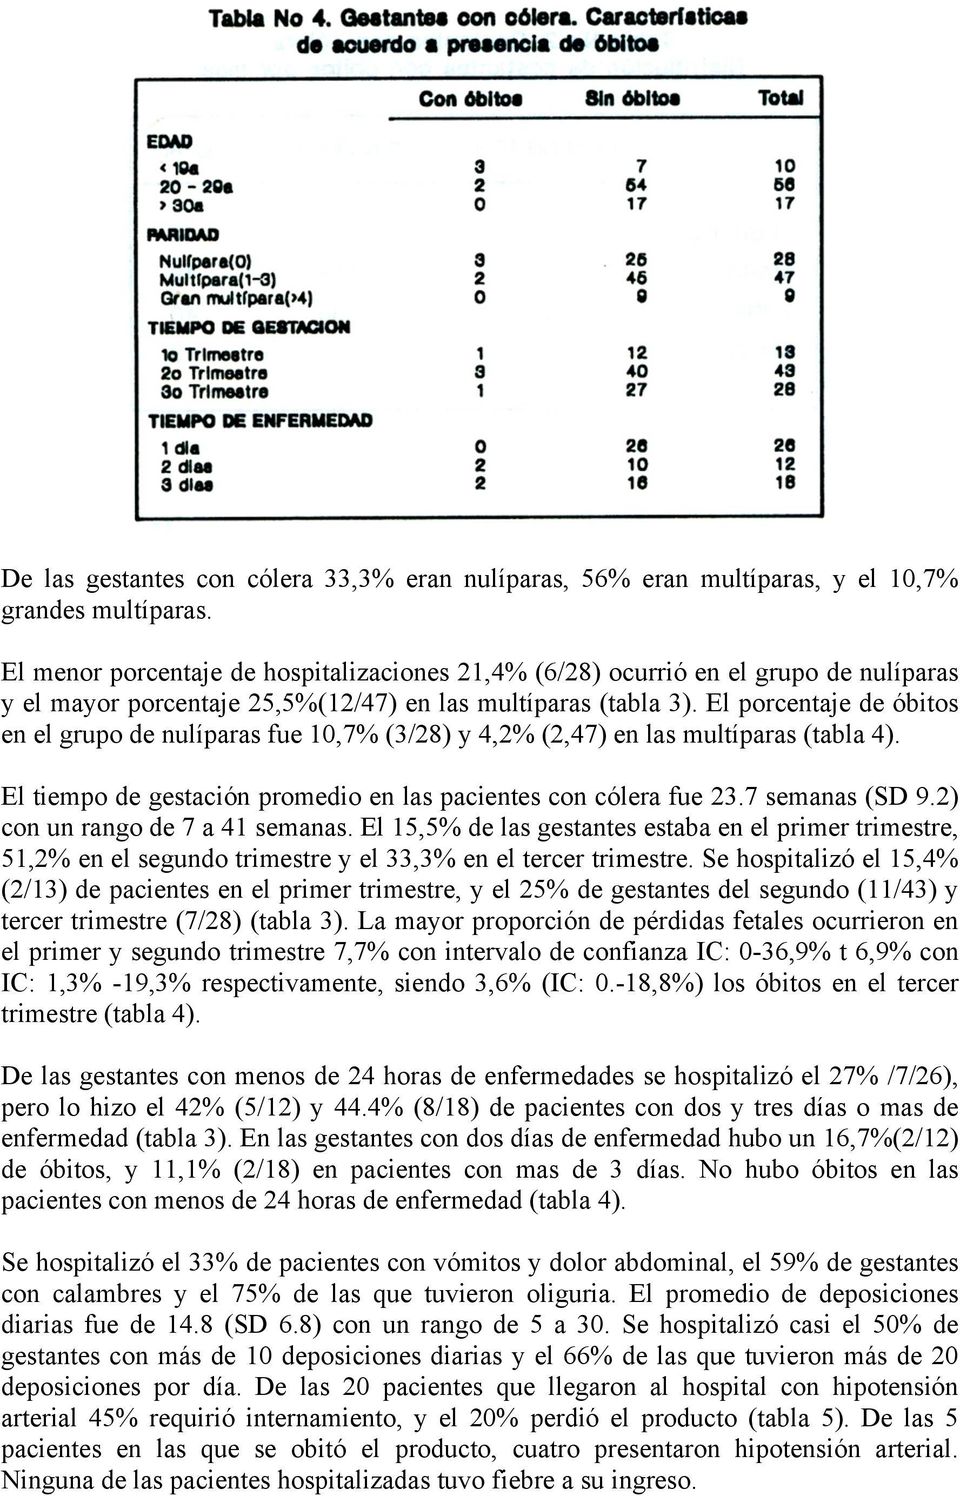 El porcentaje de óbitos en el grupo de nulíparas fue 10,7% (3/28) y 4,2% (2,47) en las multíparas (tabla 4). El tiempo de gestación promedio en las pacientes con cólera fue 23.7 semanas (SD 9.